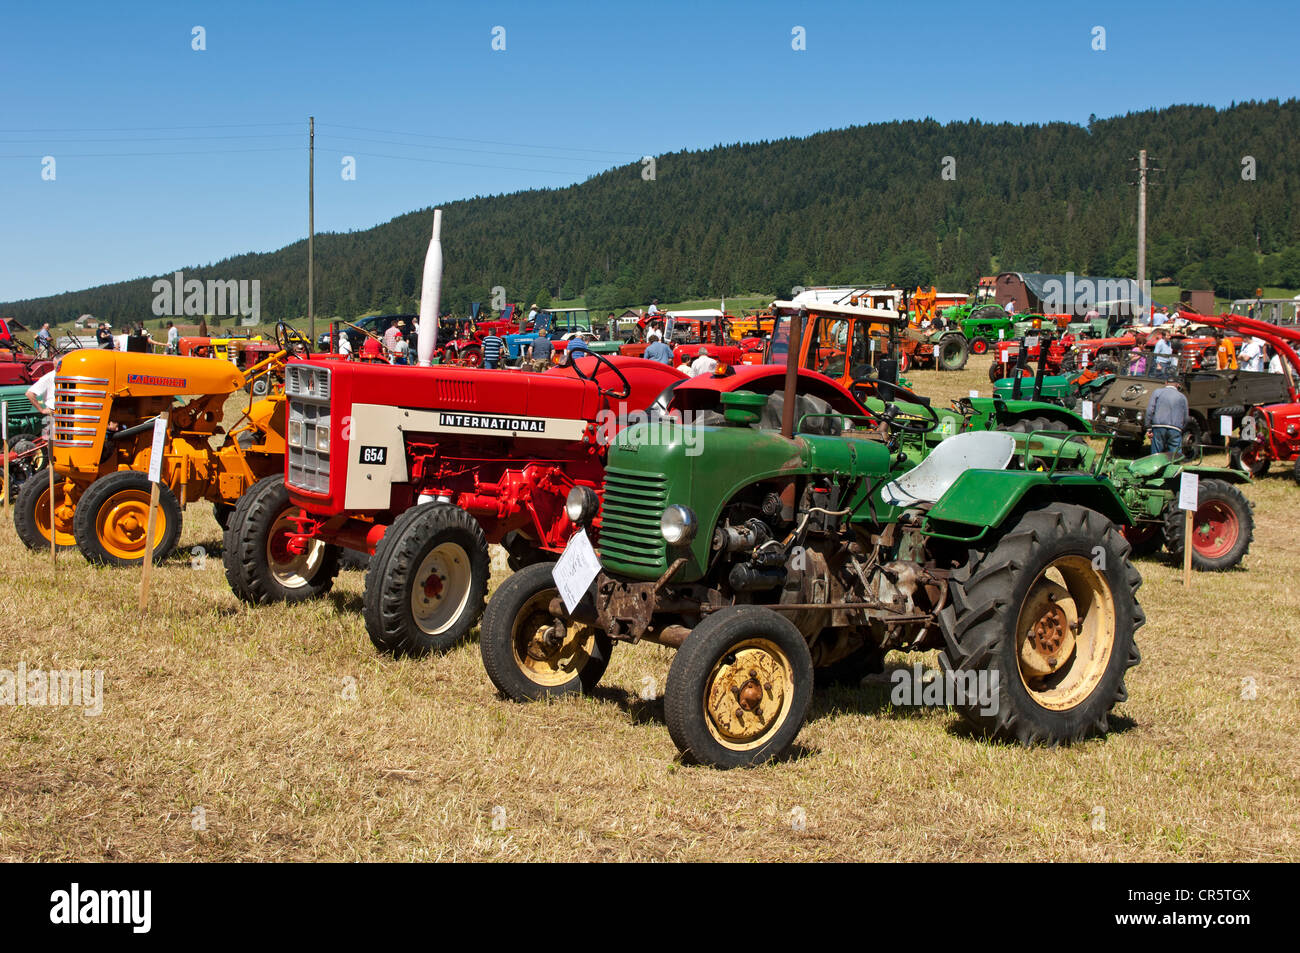 Ausstellung von Oldtimer-Traktoren und andere landwirtschaftliche  Maschinen, Tracto-Mania, La Brevine, Neuenburger Jura, Schweiz, Europa  Stockfotografie - Alamy